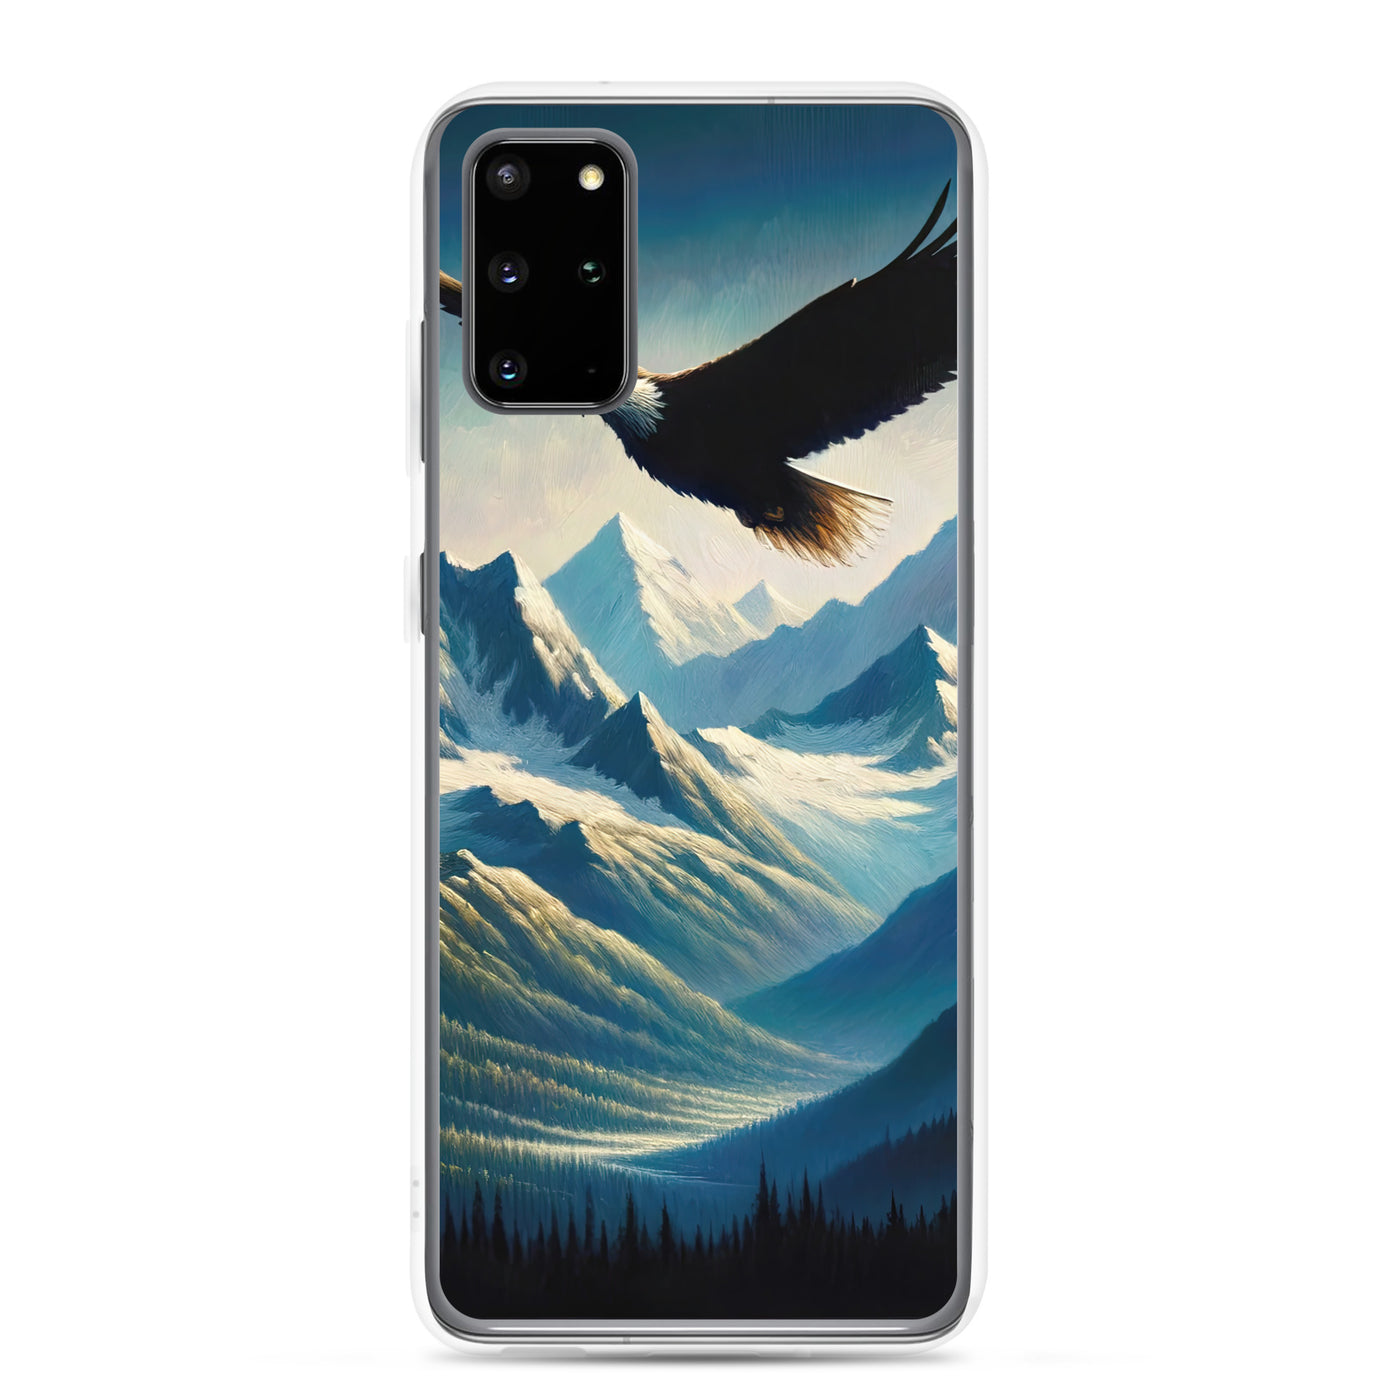 Ölgemälde eines Adlers vor schneebedeckten Bergsilhouetten - Samsung Schutzhülle (durchsichtig) berge xxx yyy zzz Samsung Galaxy S20 Plus